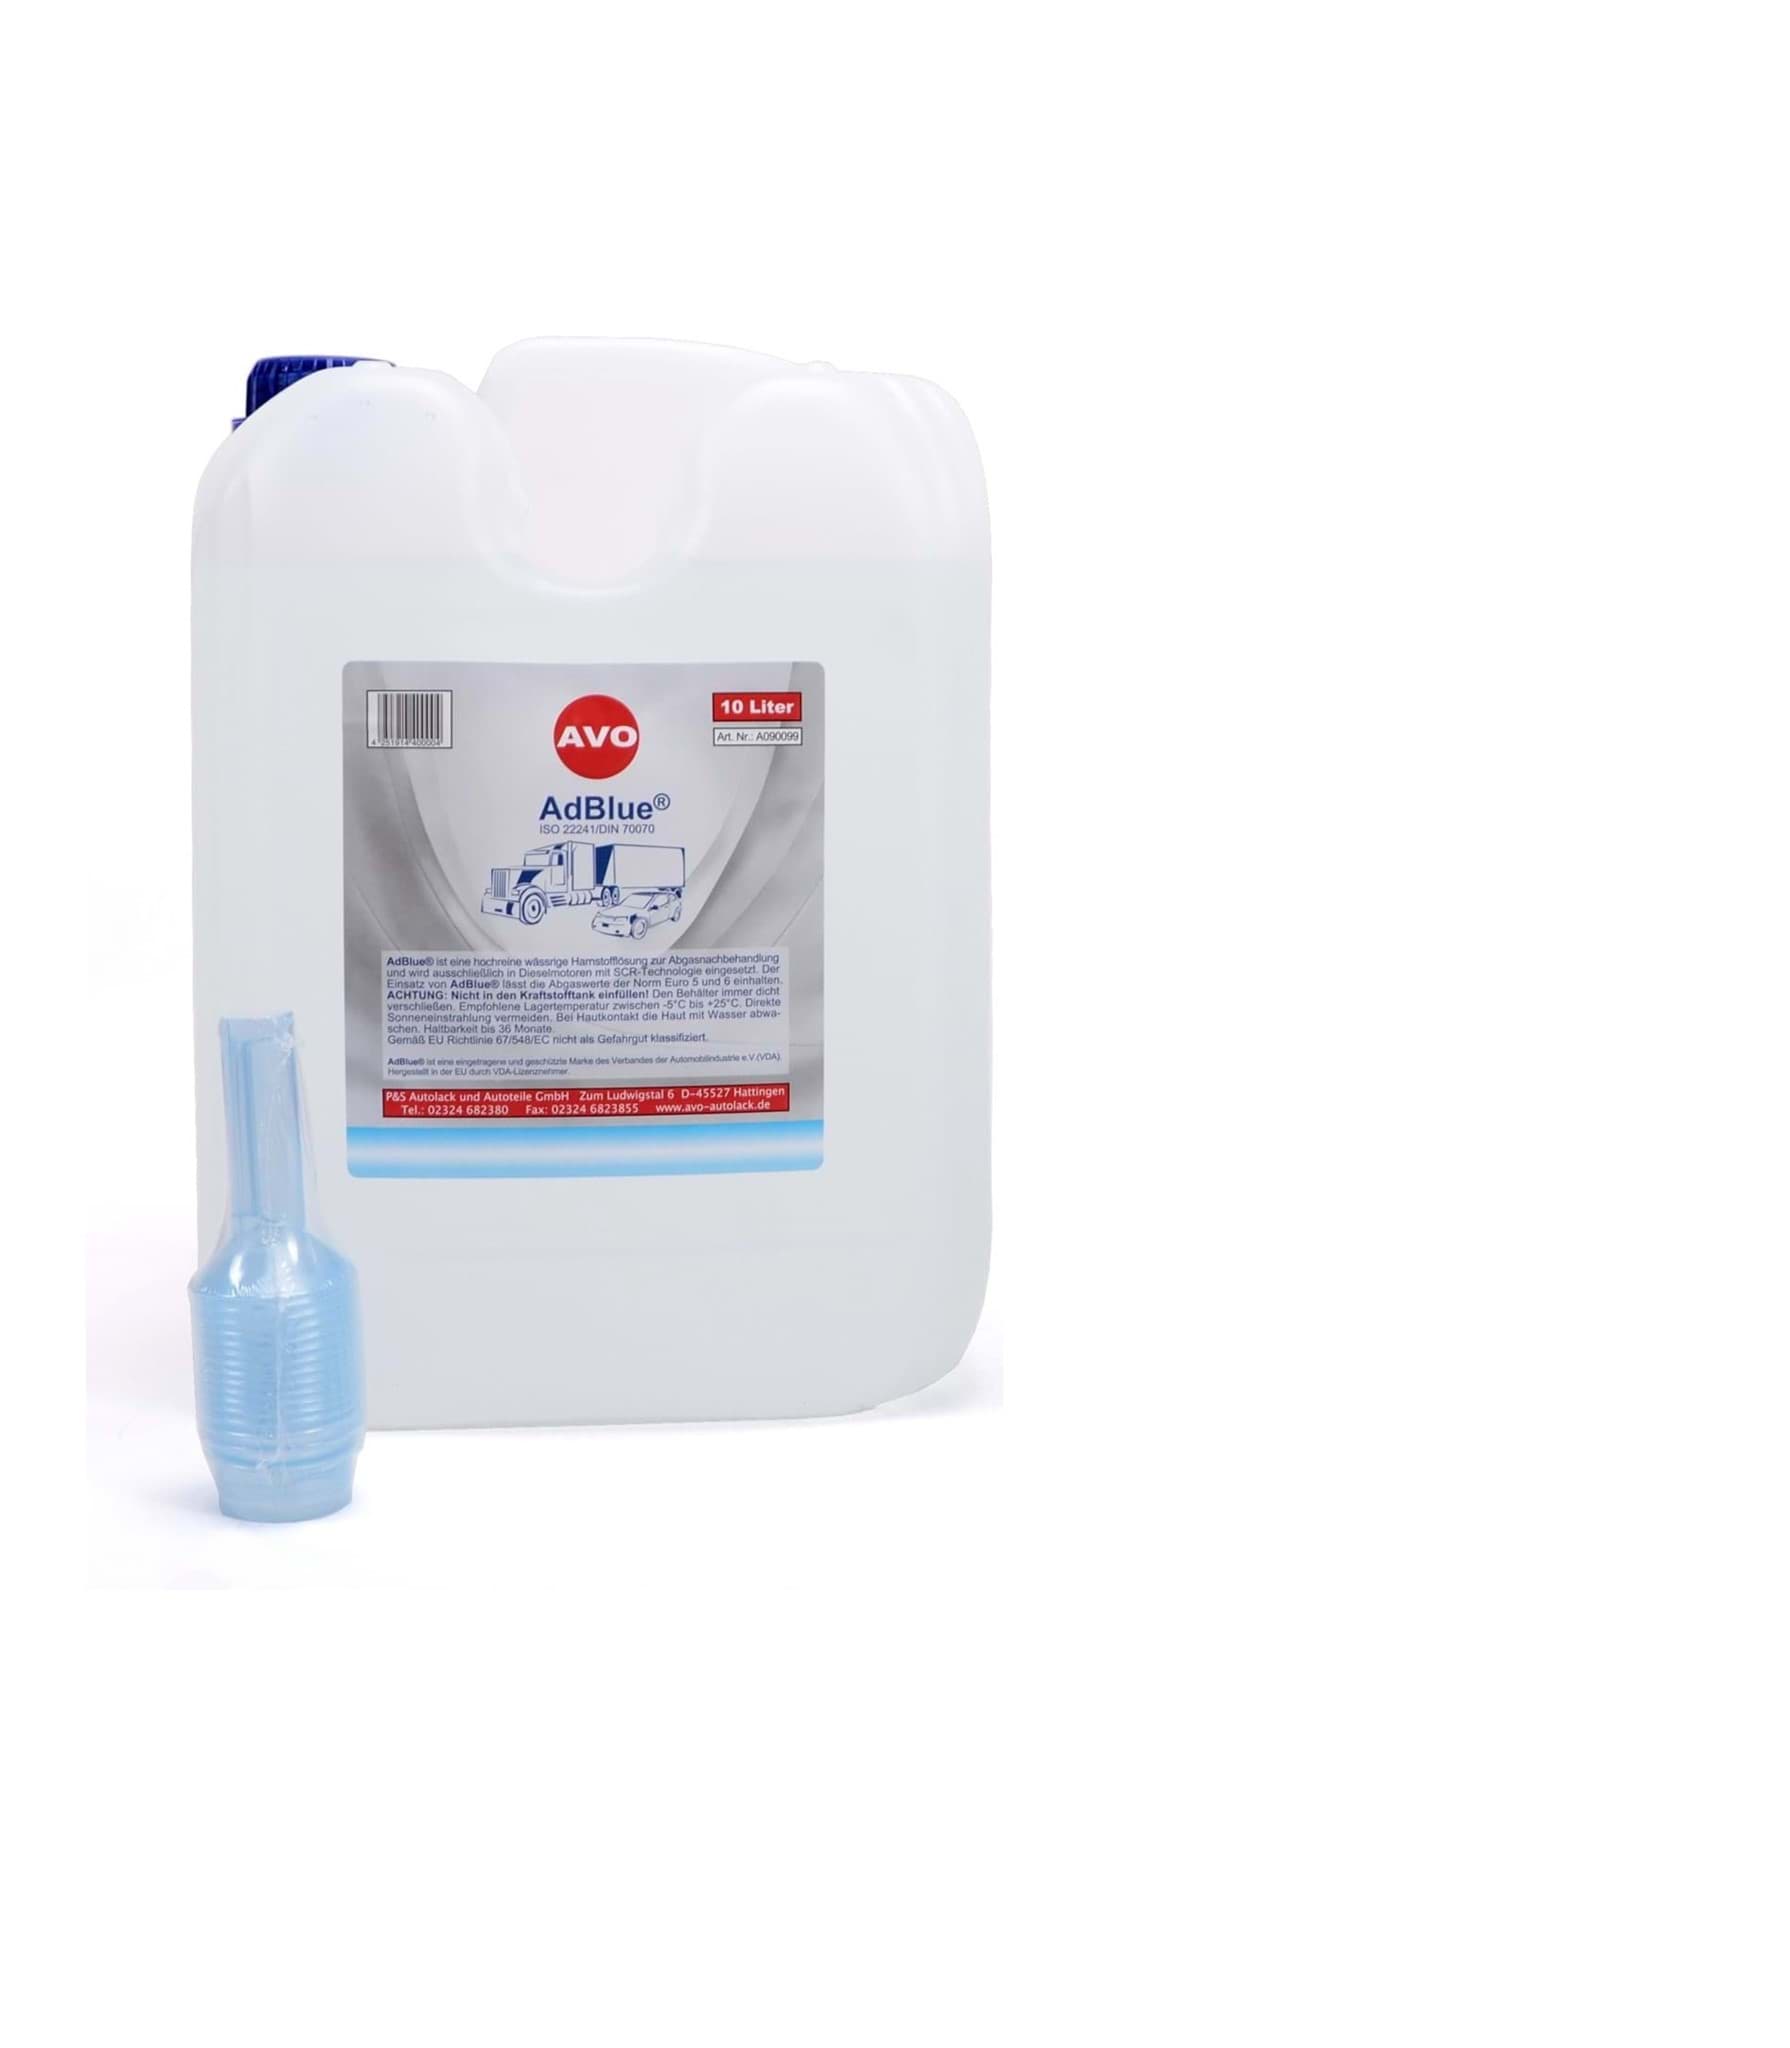 Afbeelding van AdBlue® 10 Liter Harnstofflösung Additiv für Diesel 